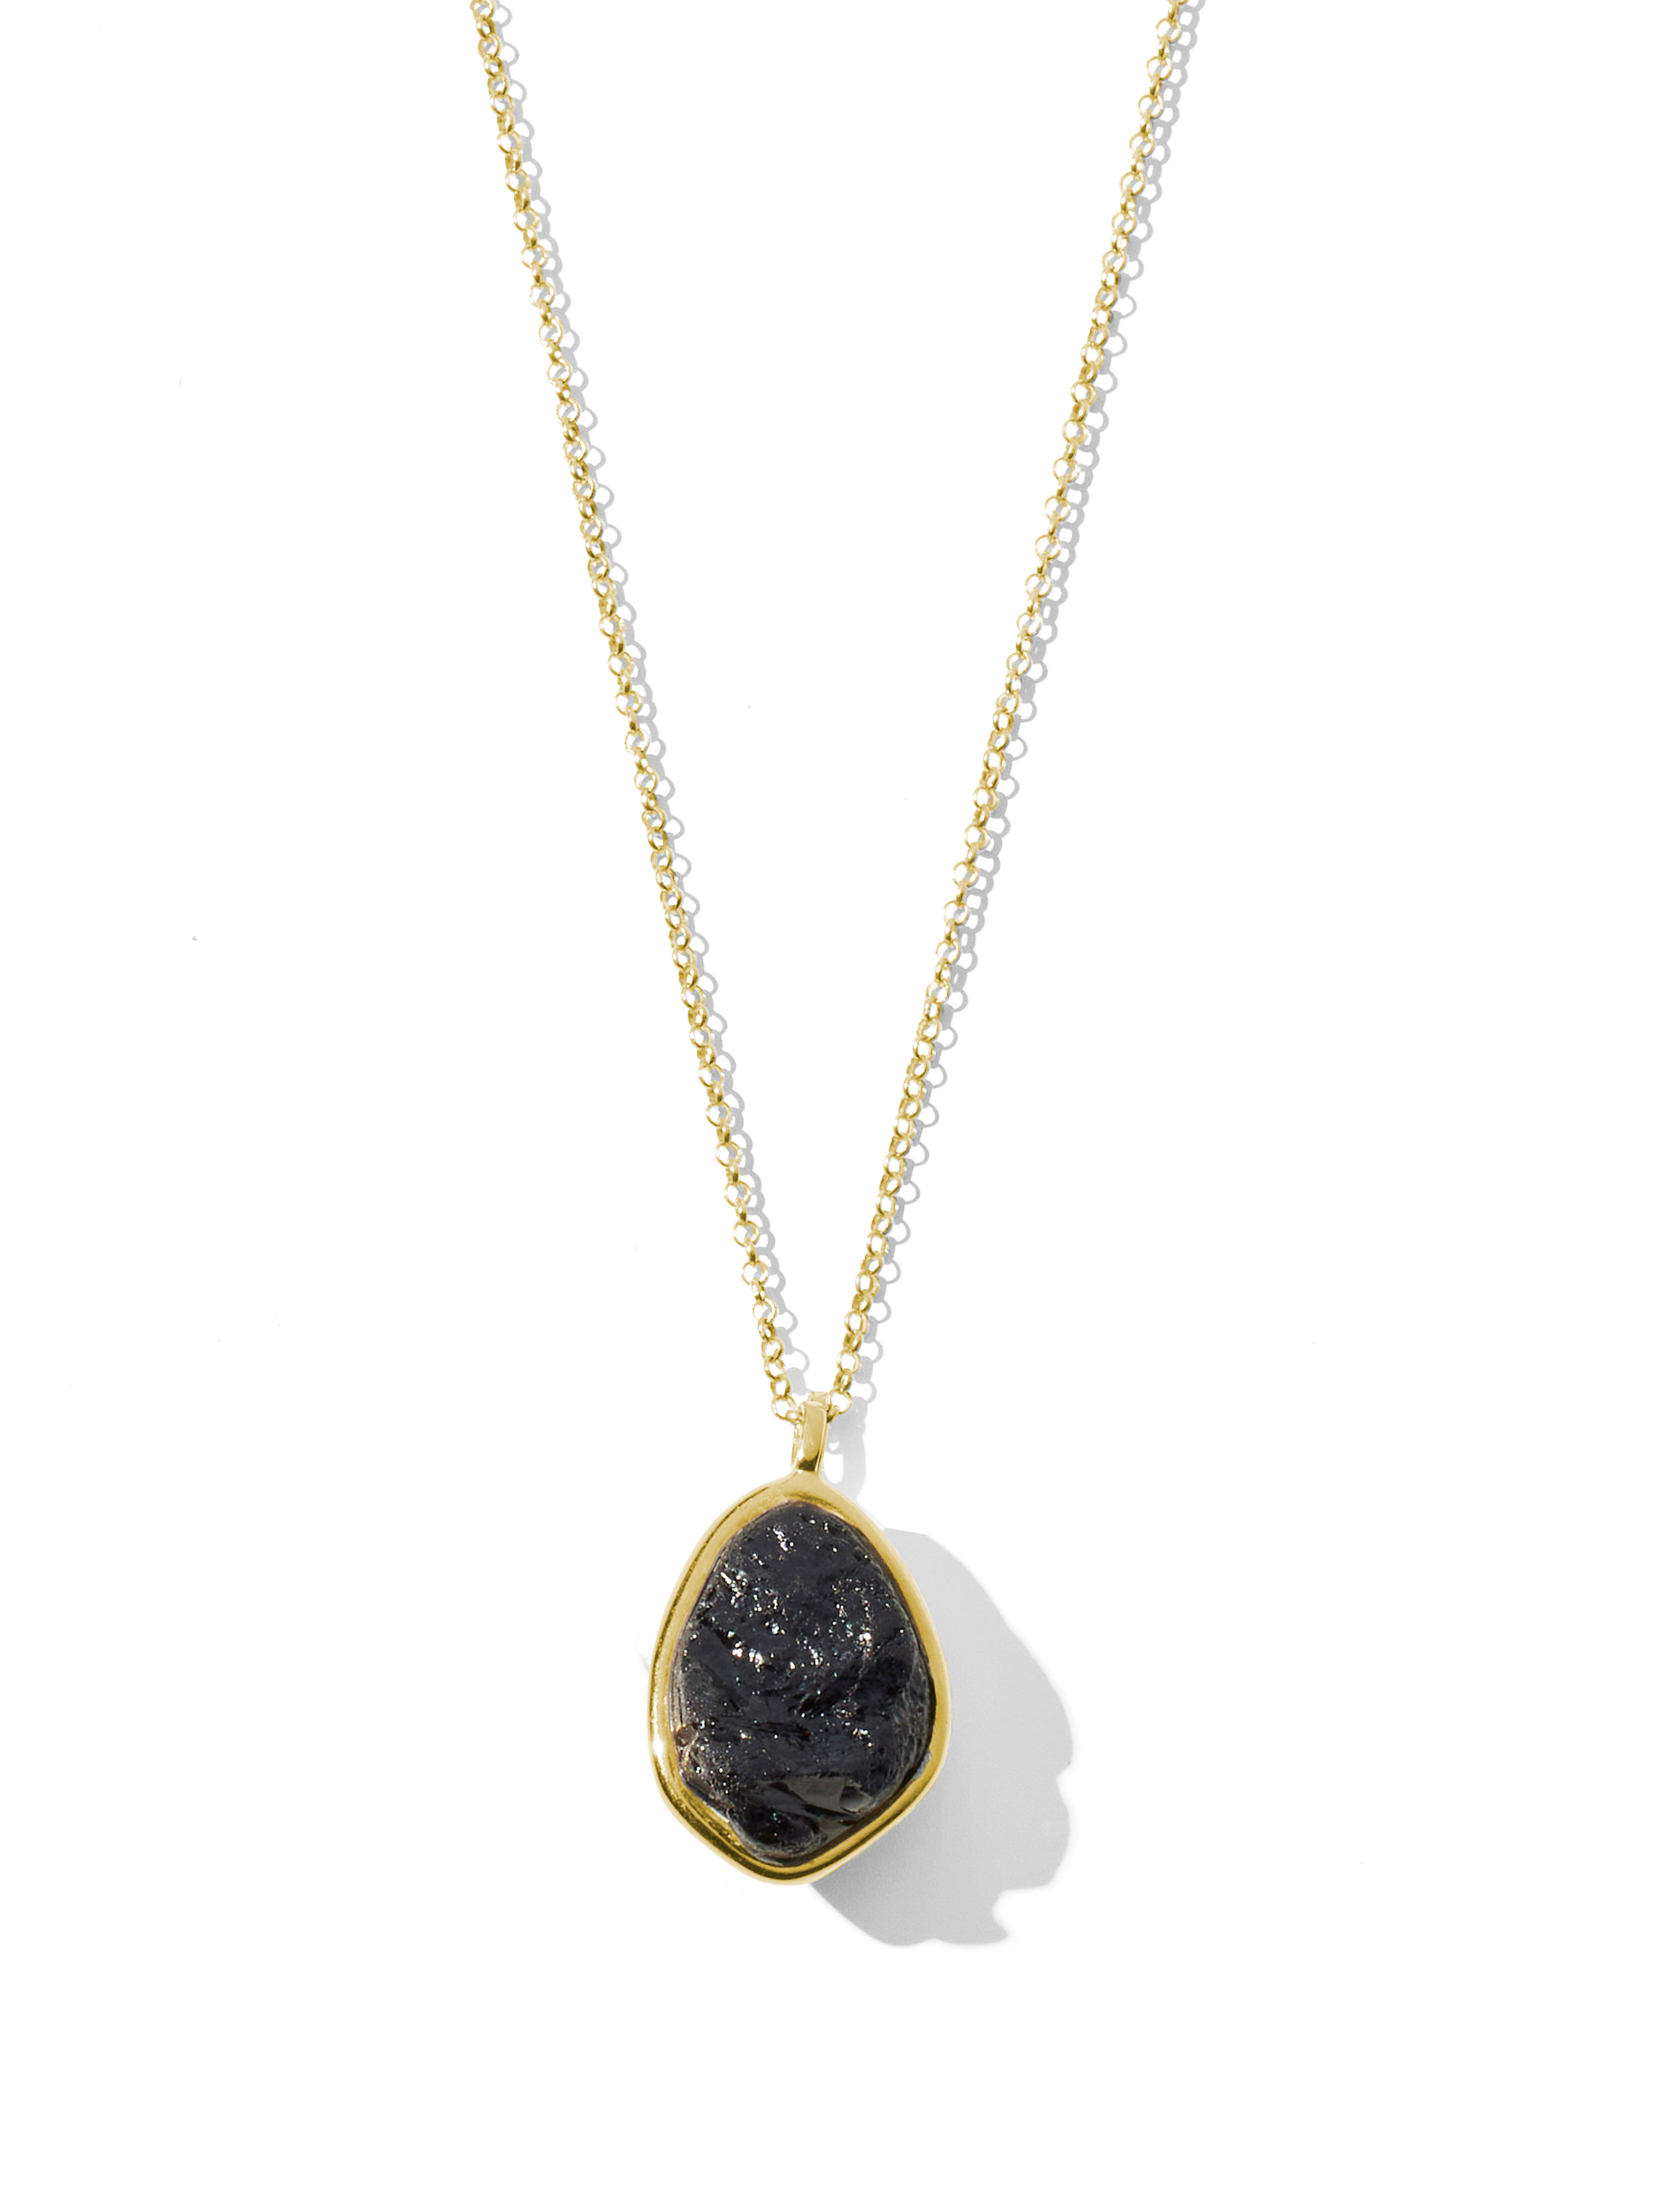 azalea necklace | black tourmaline